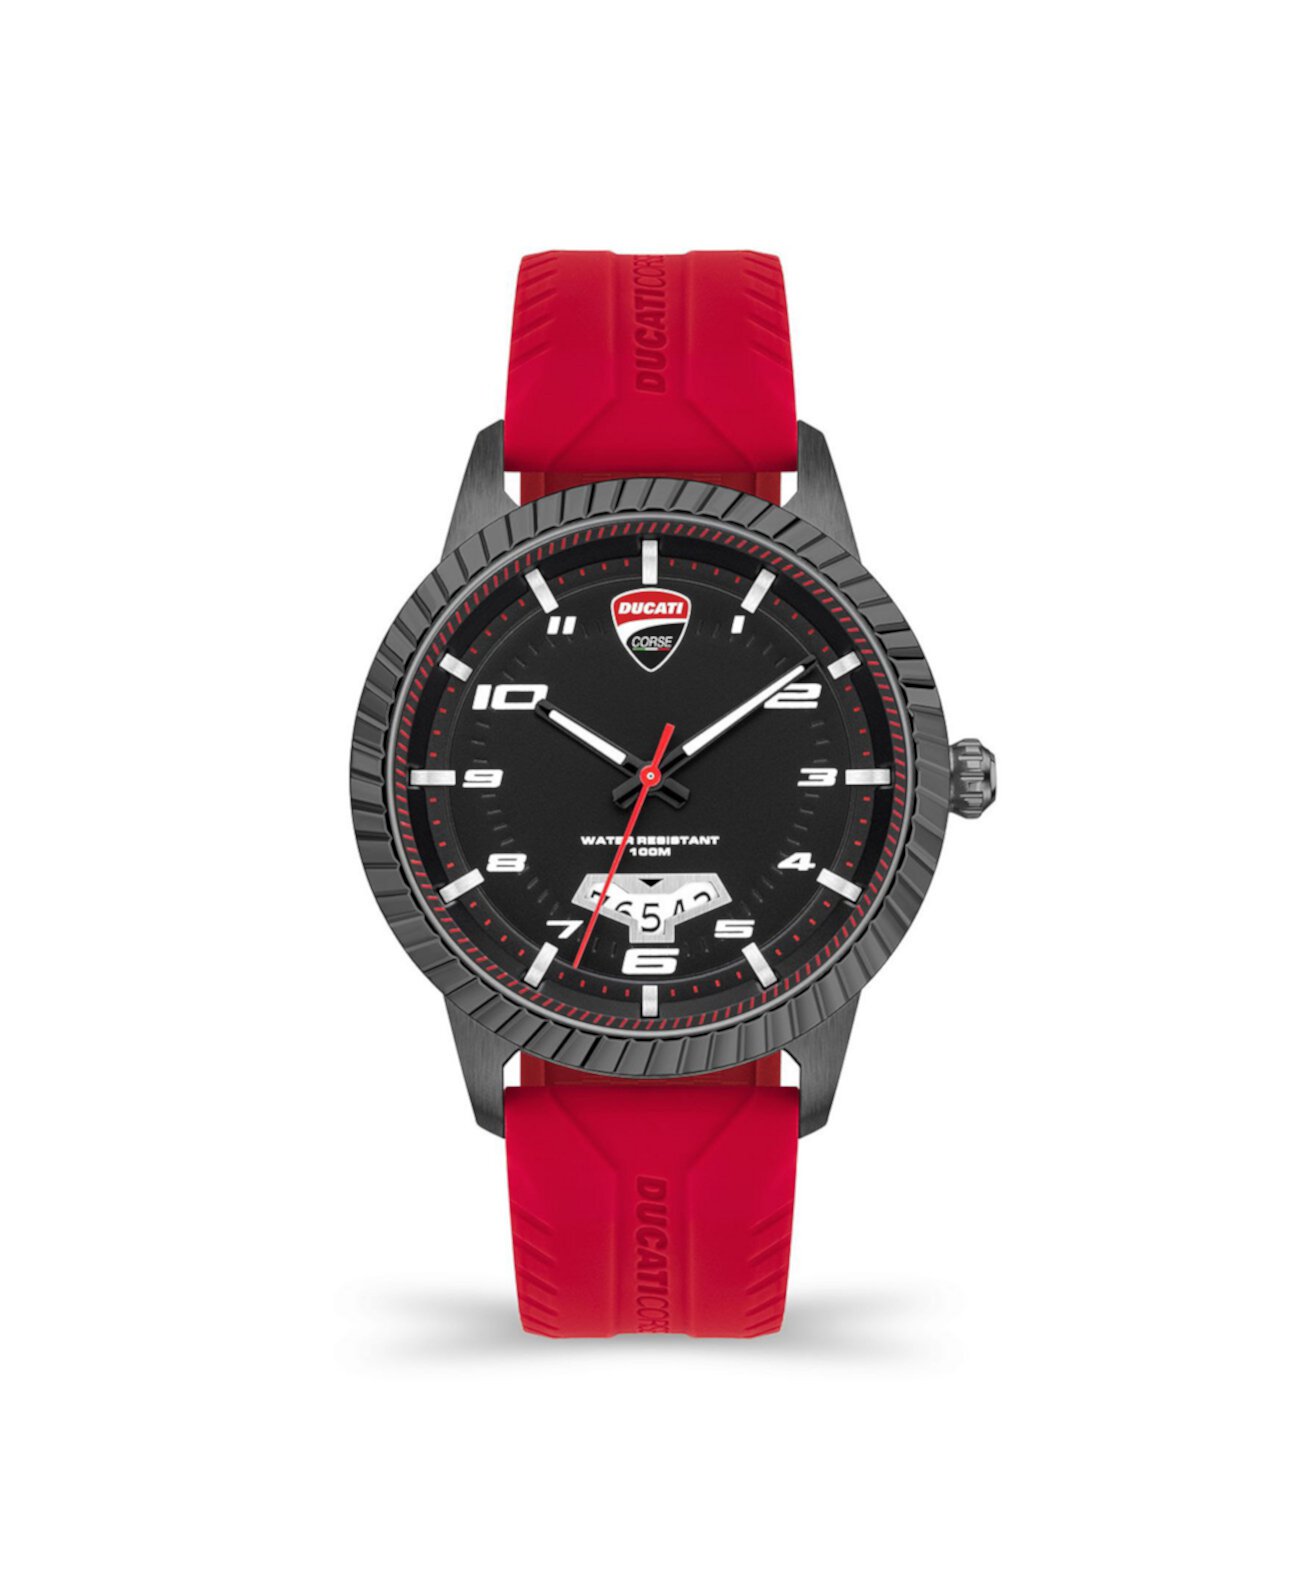 Мужские часы Podio Red с силиконовым ремешком, 44 мм Ducati Corse